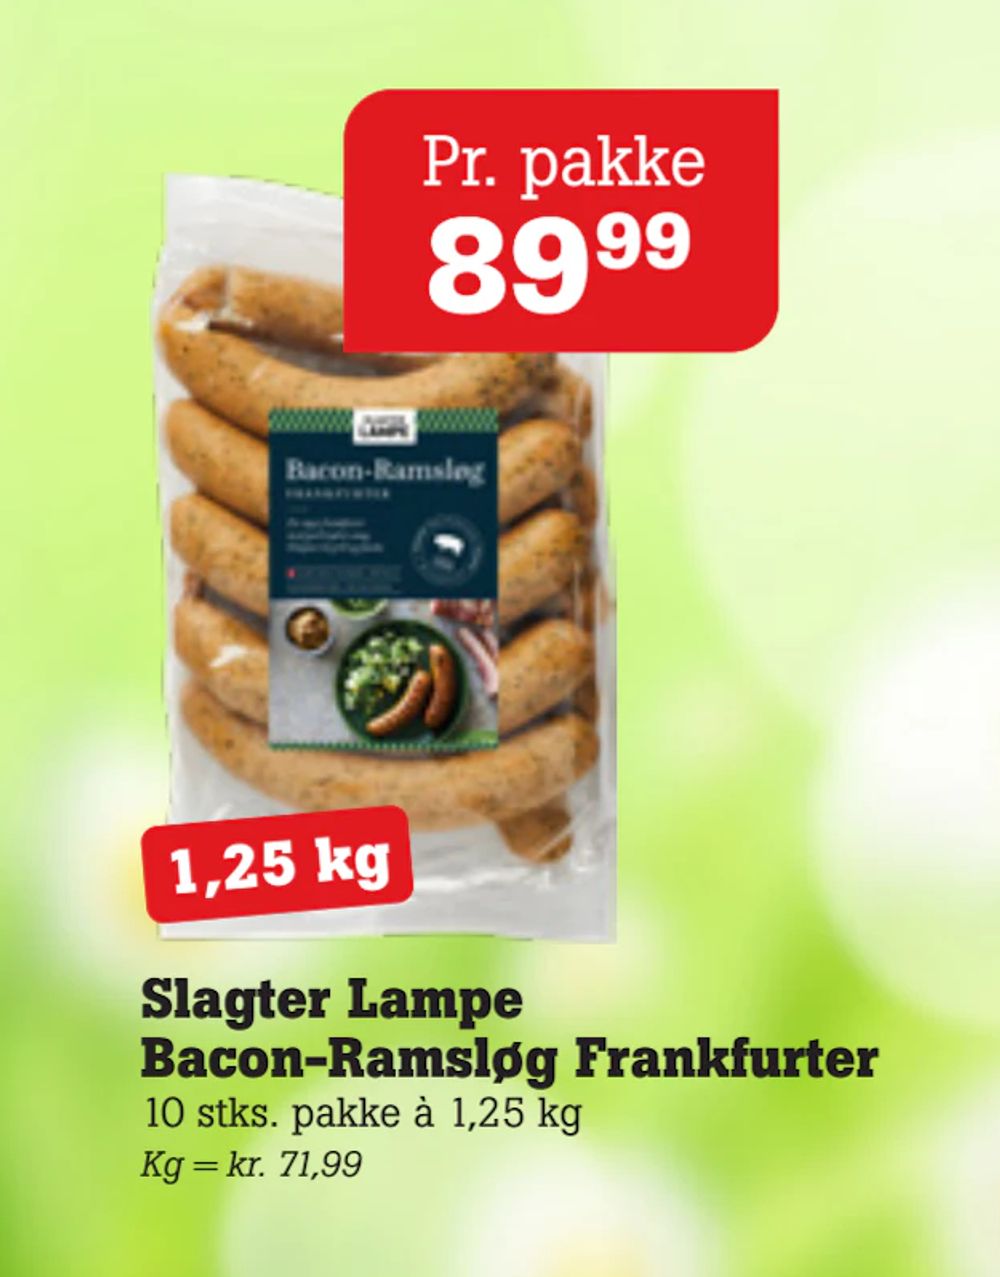 Tilbud på Slagter Lampe Bacon-Ramsløg Frankfurter fra Poetzsch Padborg til 89,99 kr.